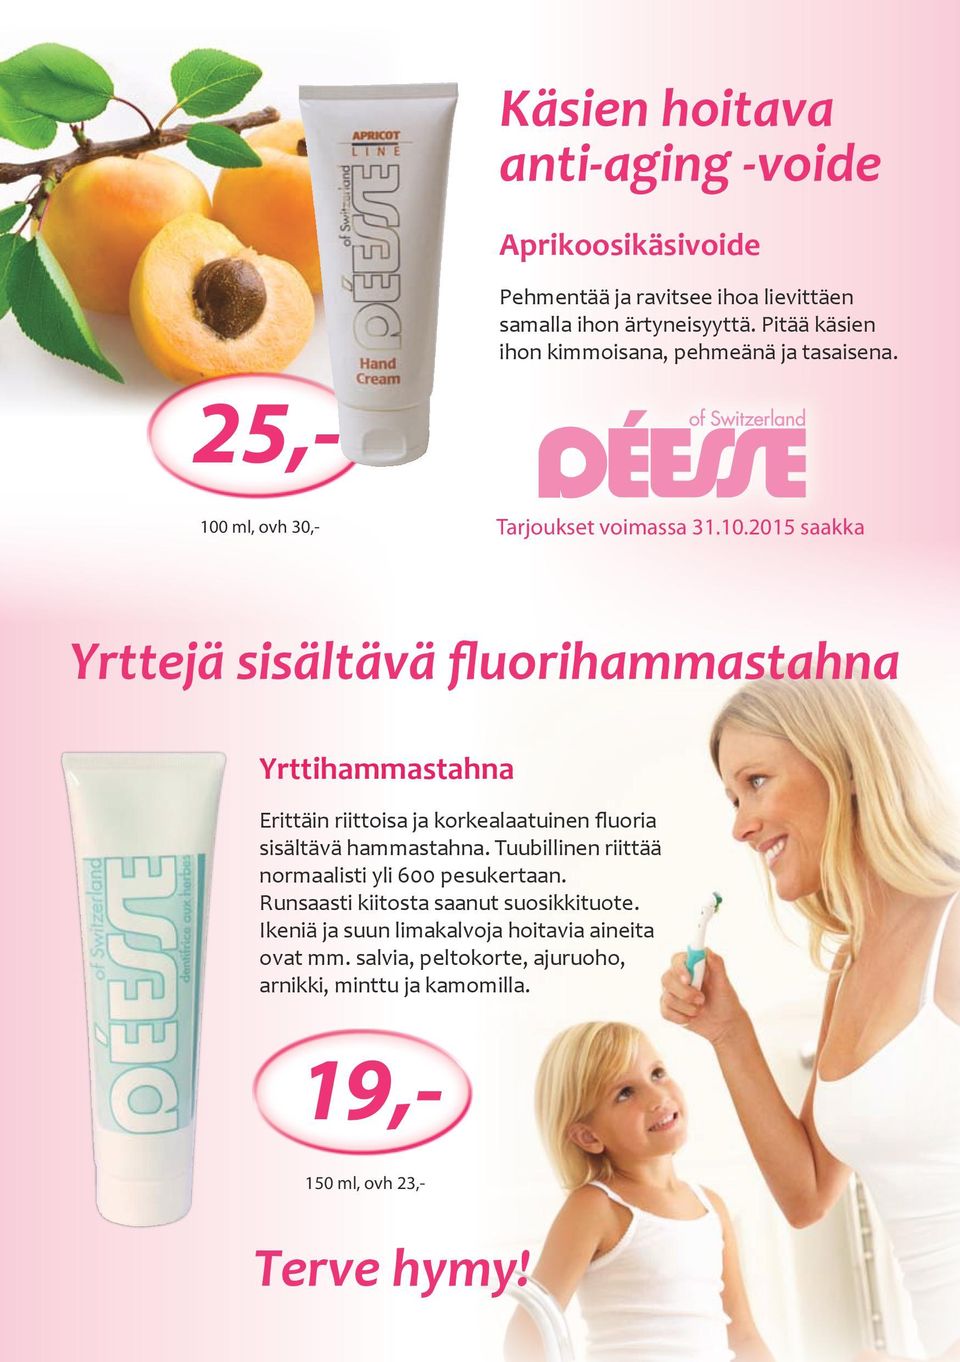 2015 saakka Yrttejä sisältävä fluorihammastahna Yrttihammastahna Erittäin riittoisa ja korkealaatuinen fluoria sisältävä hammastahna.